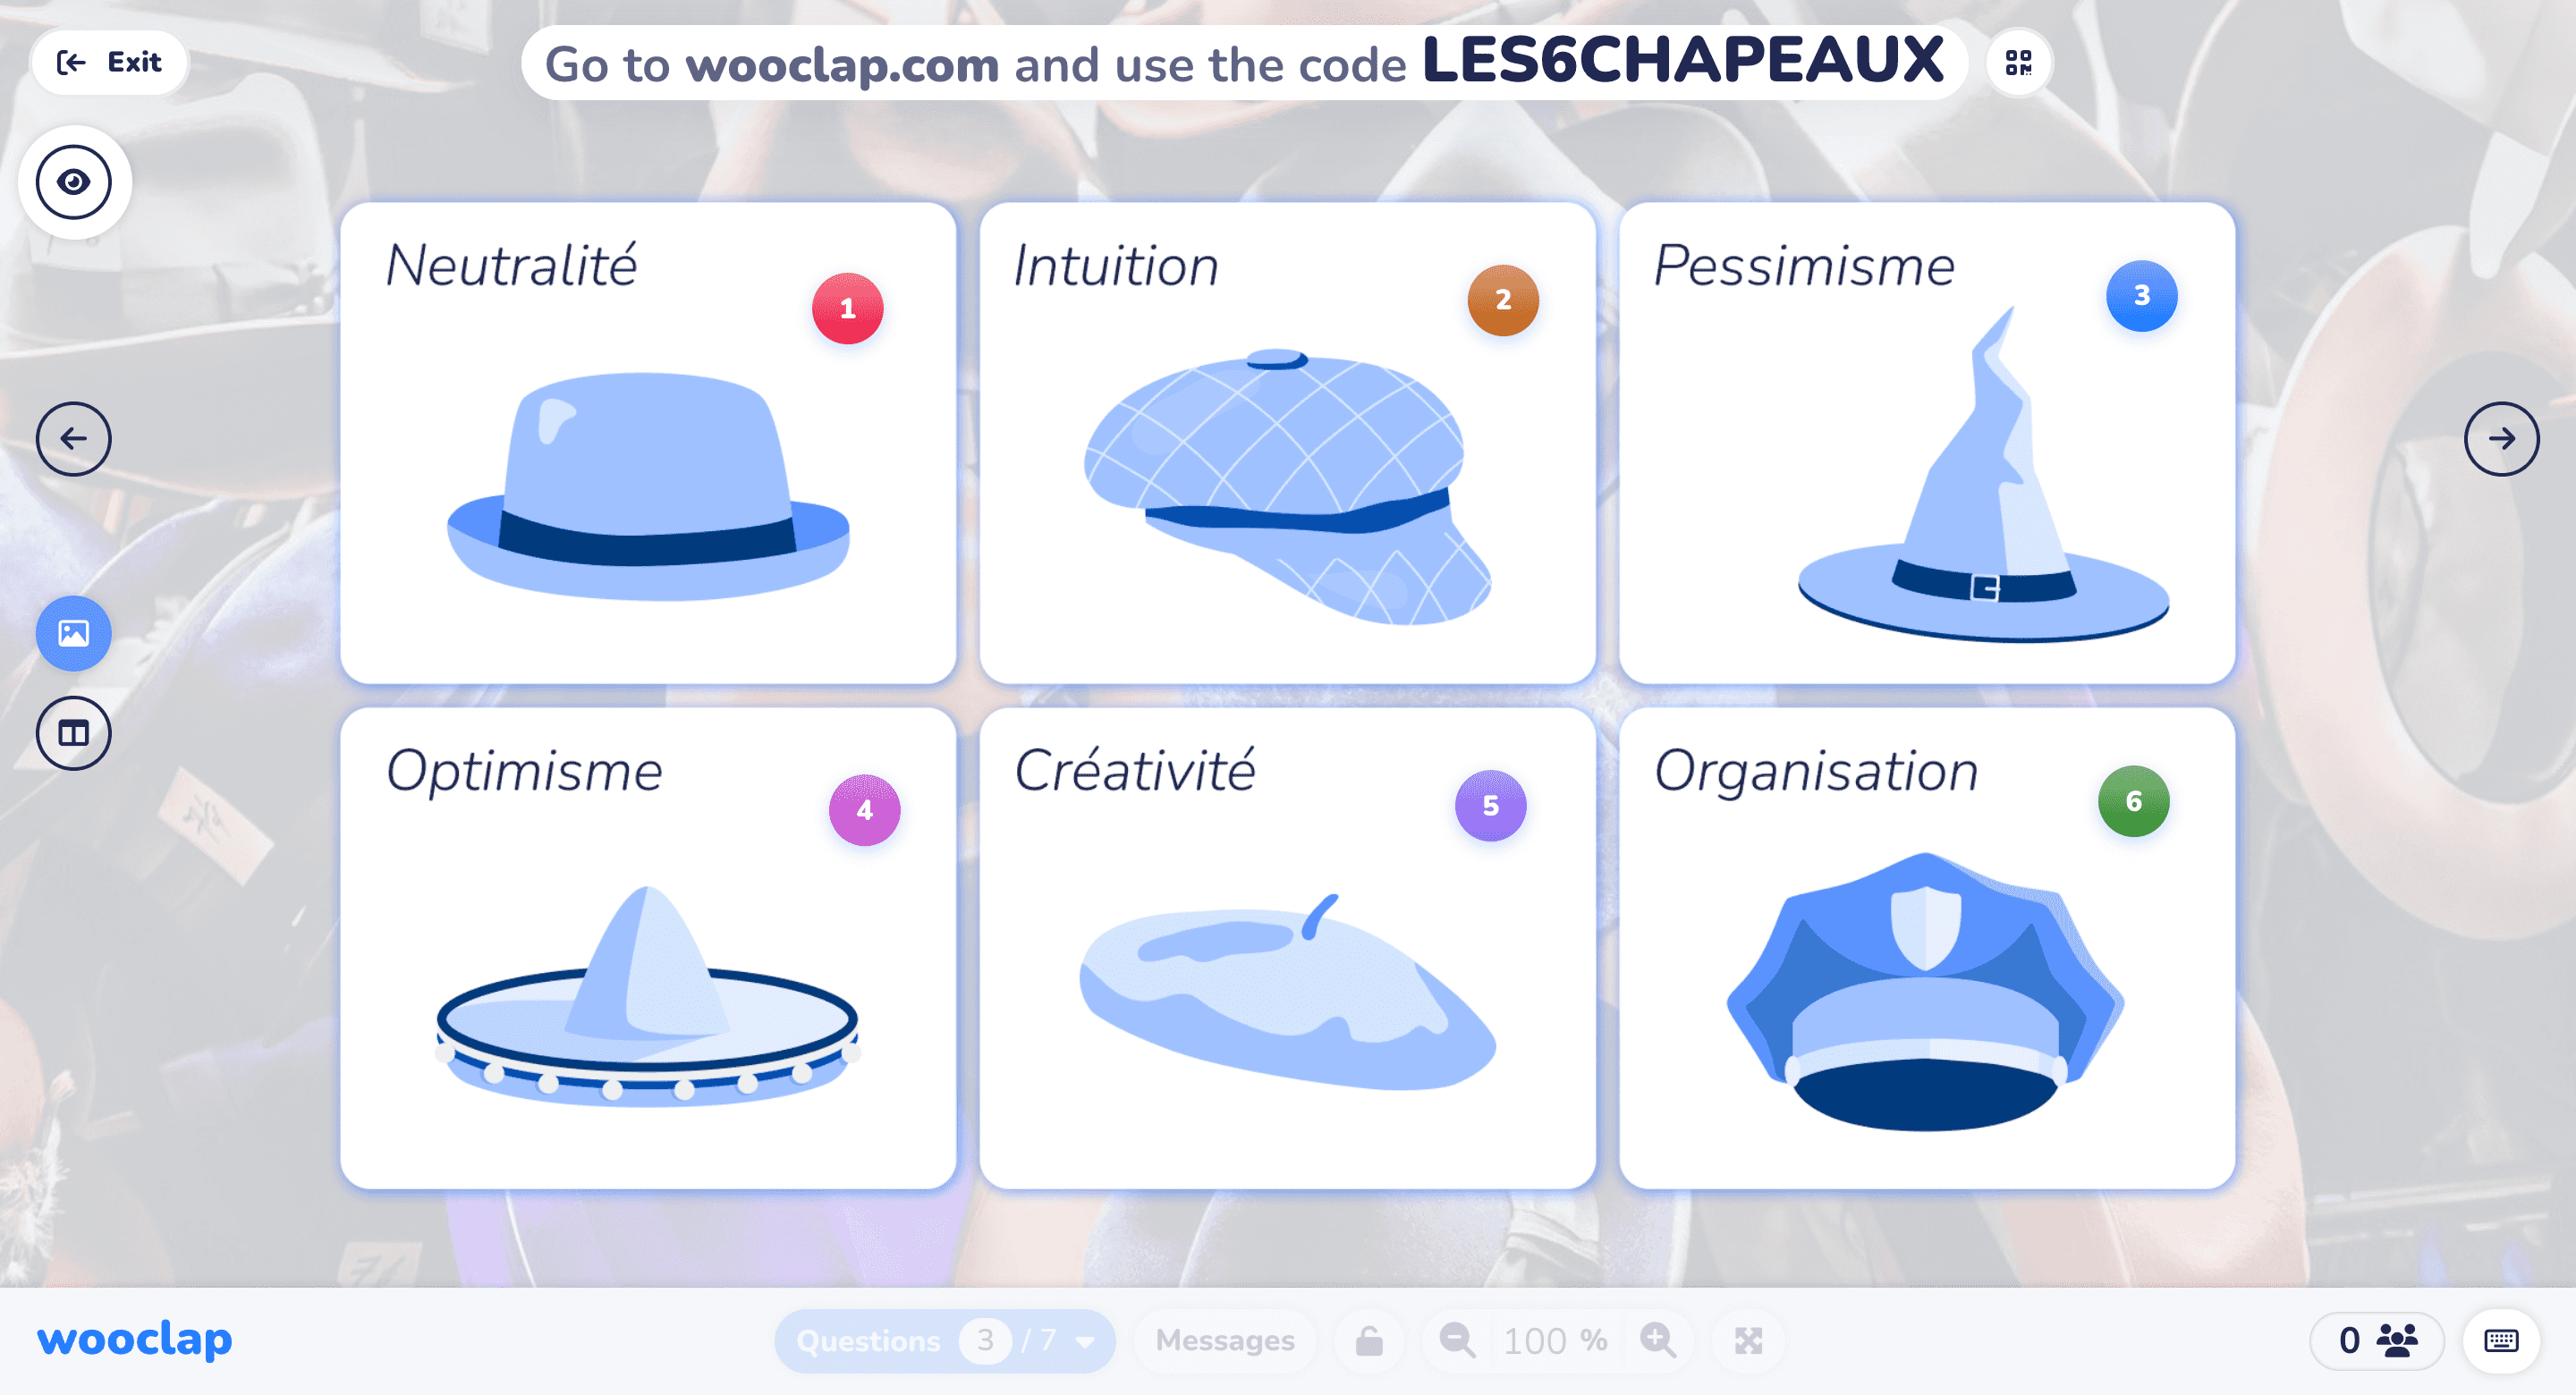 6 chapeaux